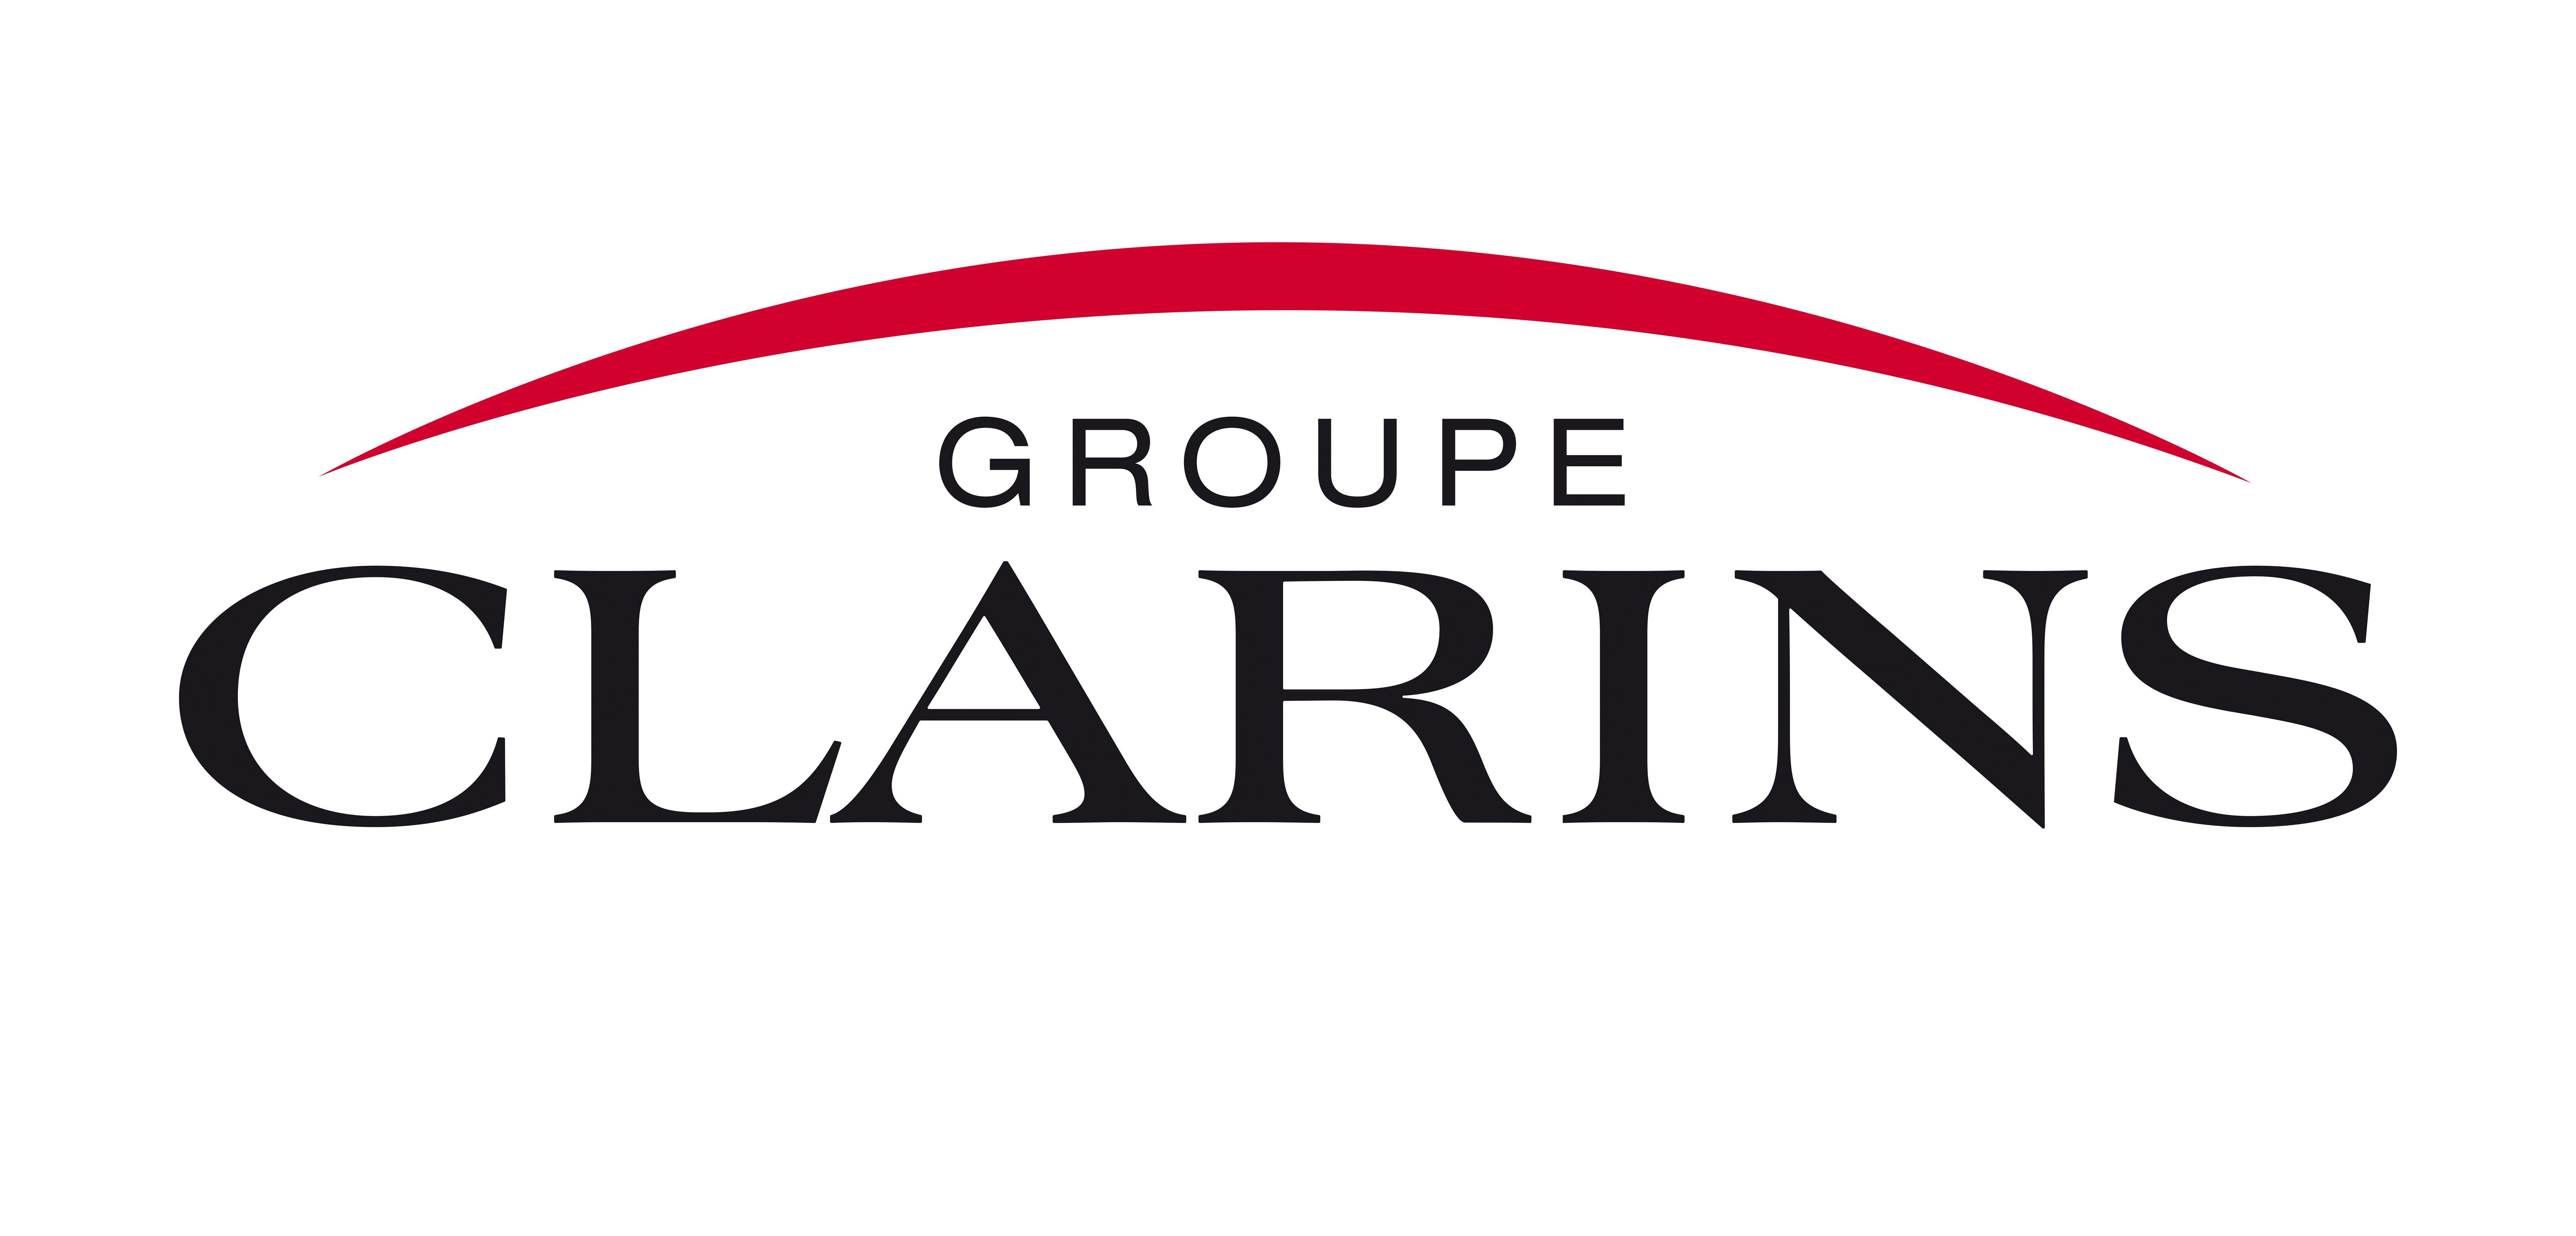 Clarins Logo - Clarins